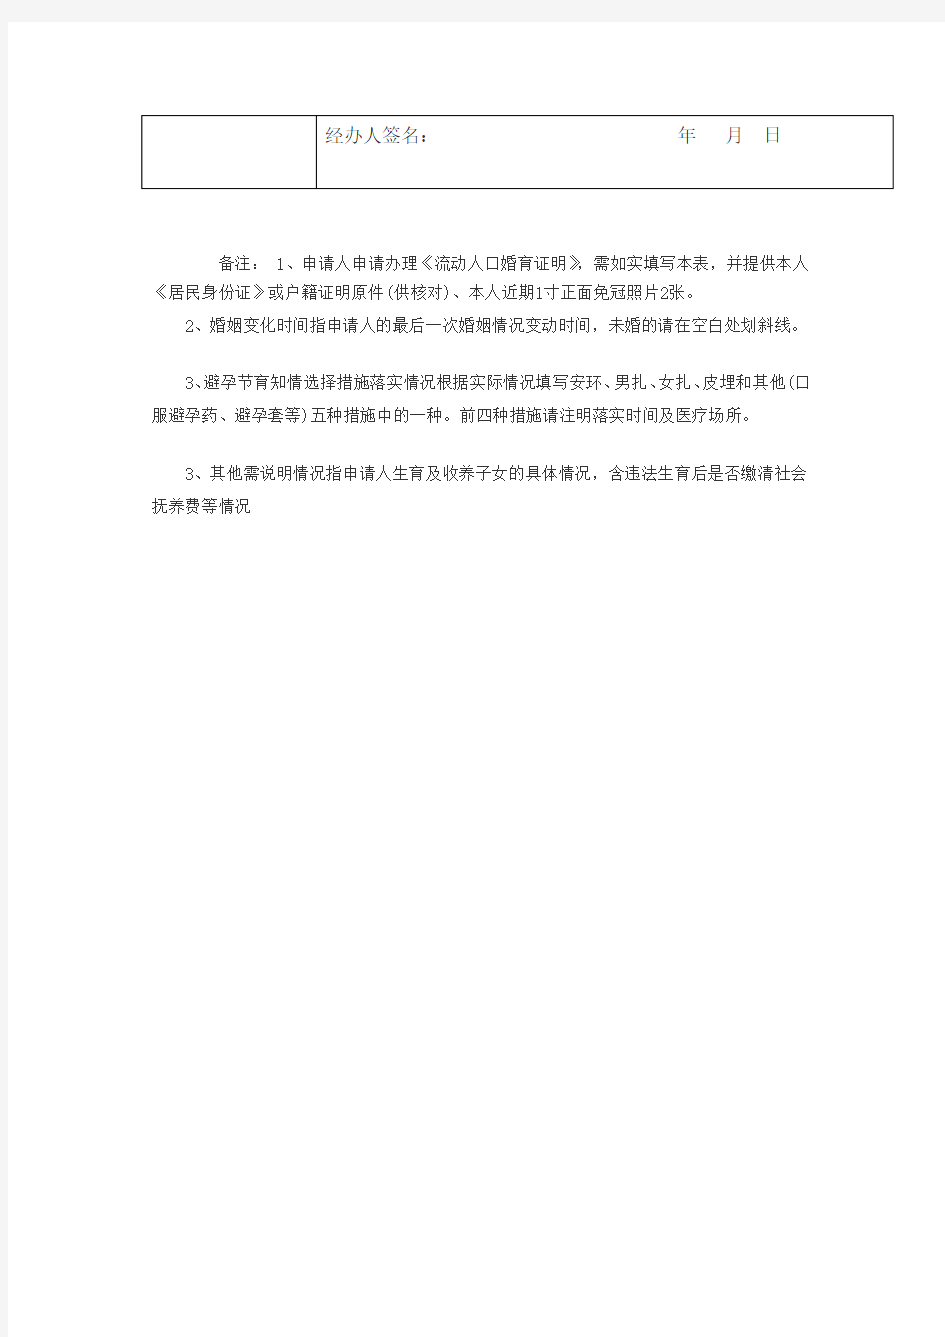 重庆市流动人口婚育证明申请表